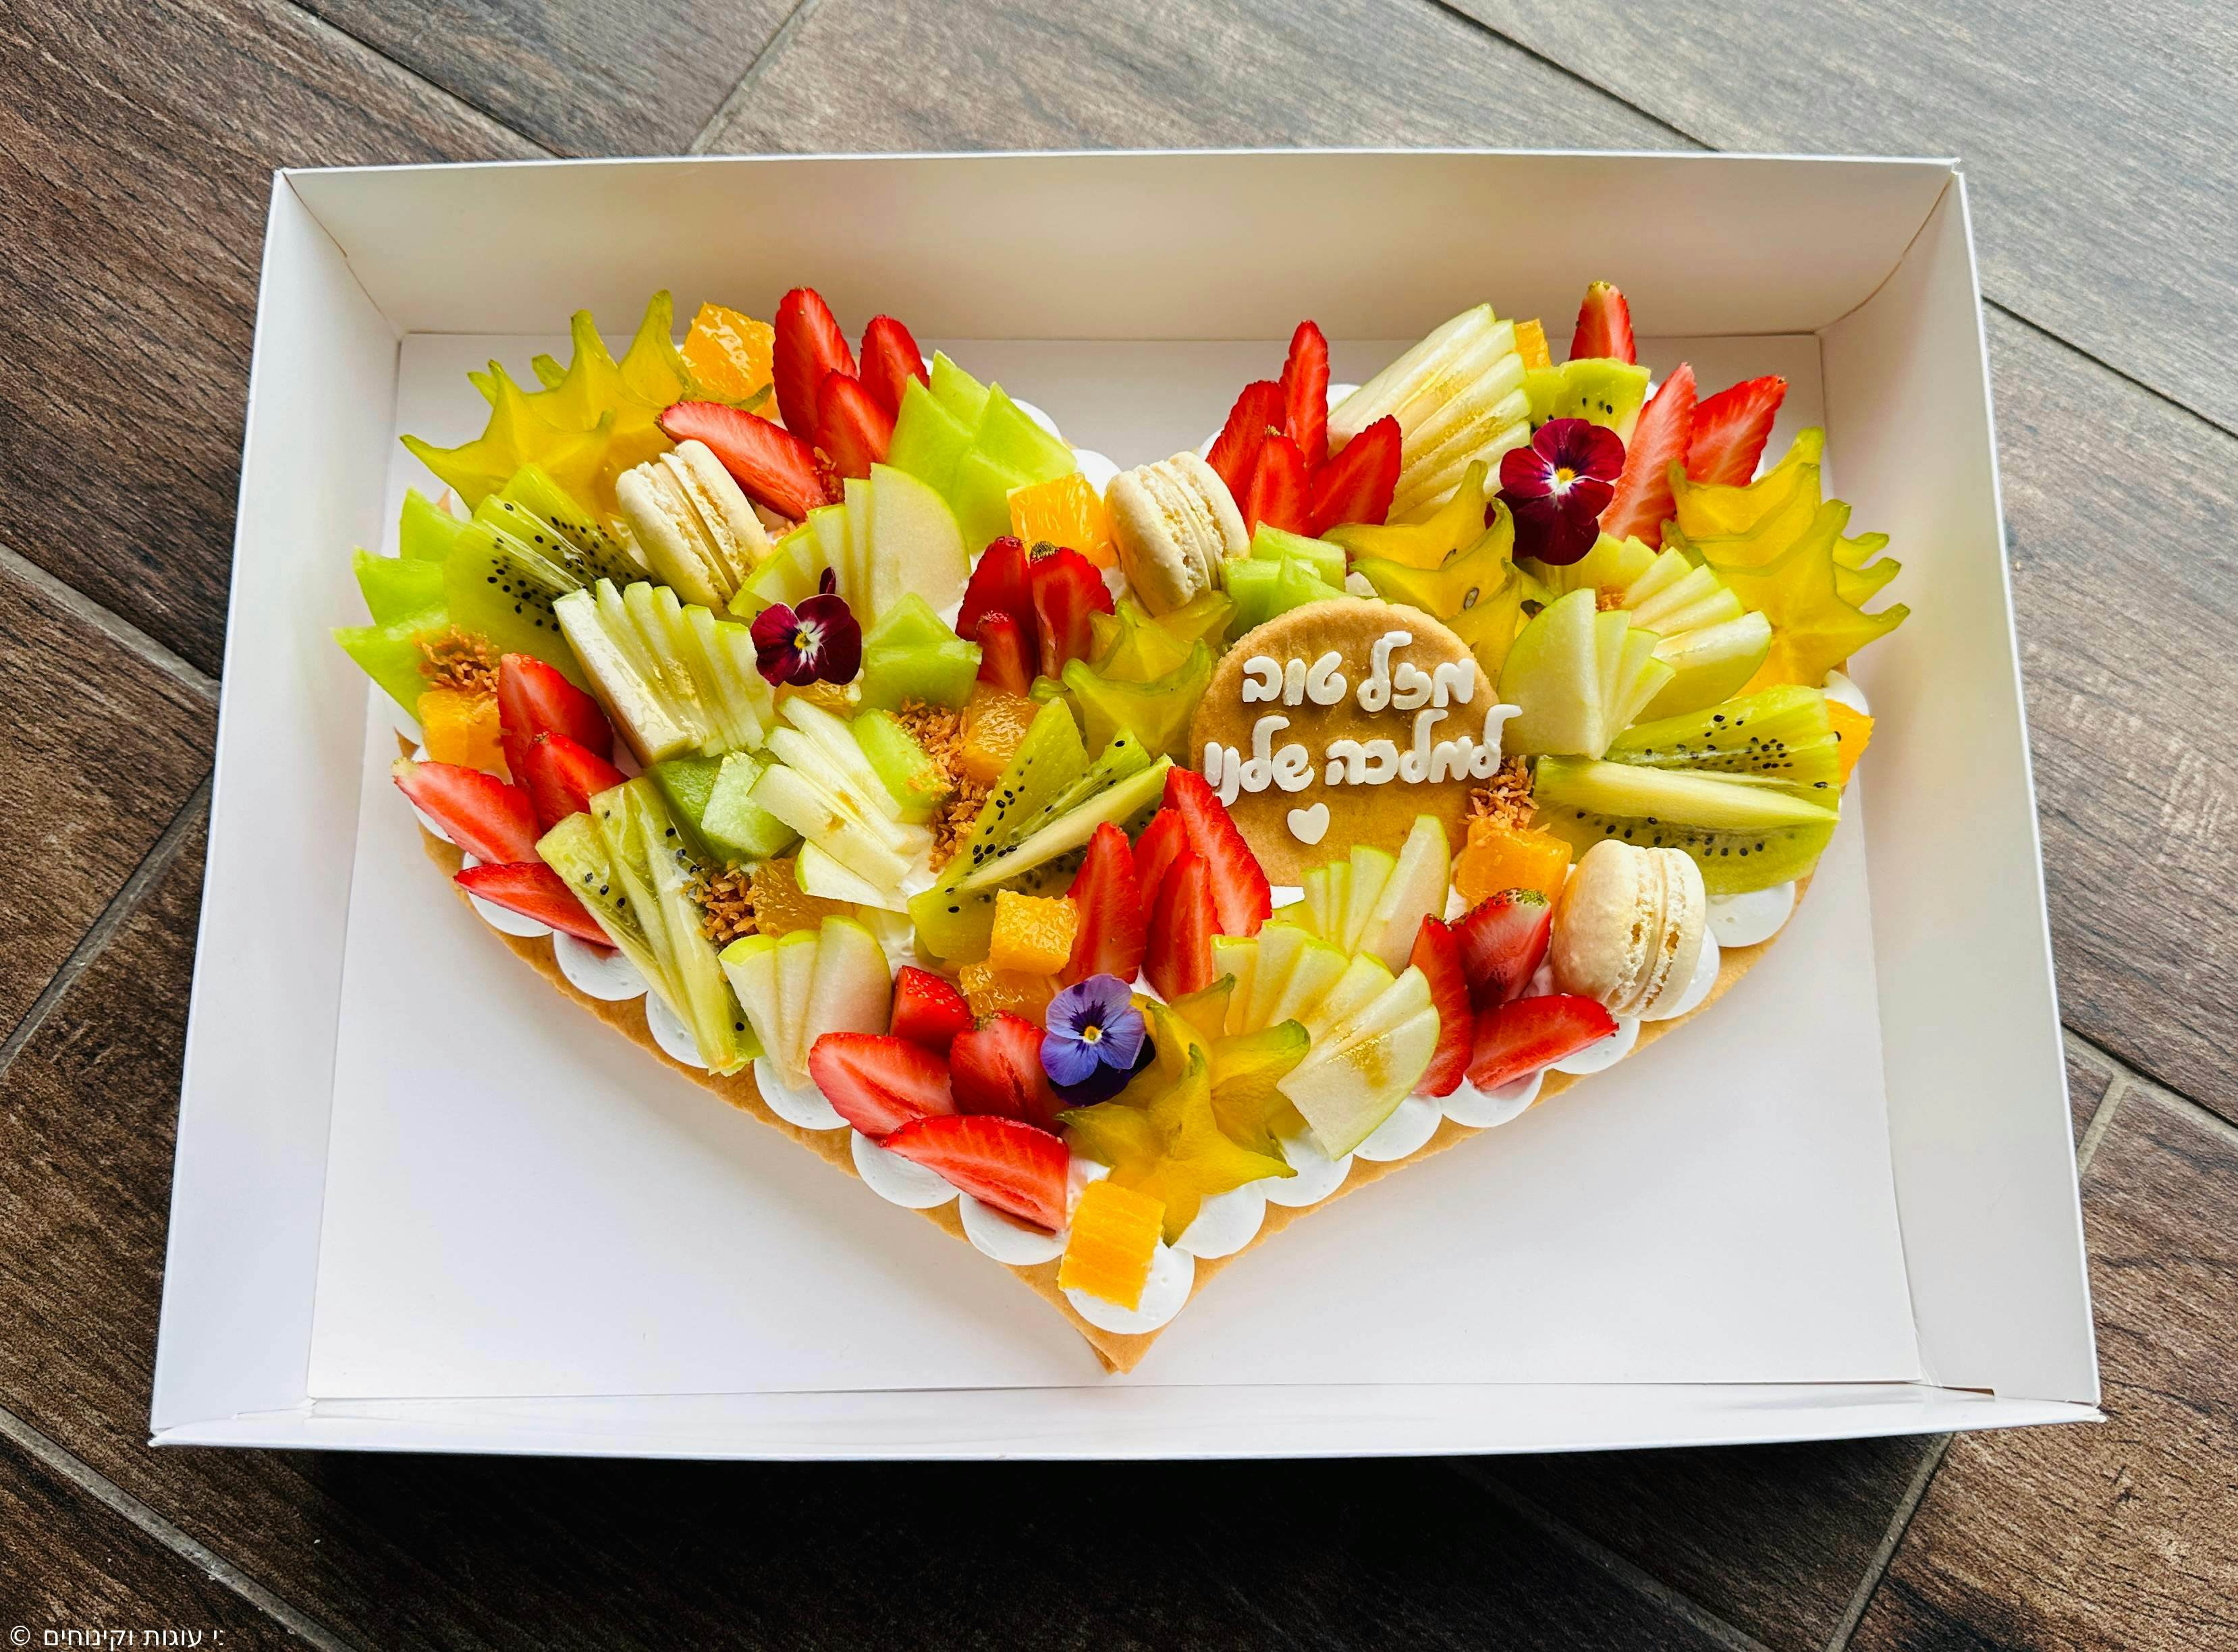 עוגת מספרים לב - בצק פריך שקדים, קרם וניל עדין
ומגוון פירות העונה עם פרחים אכילים